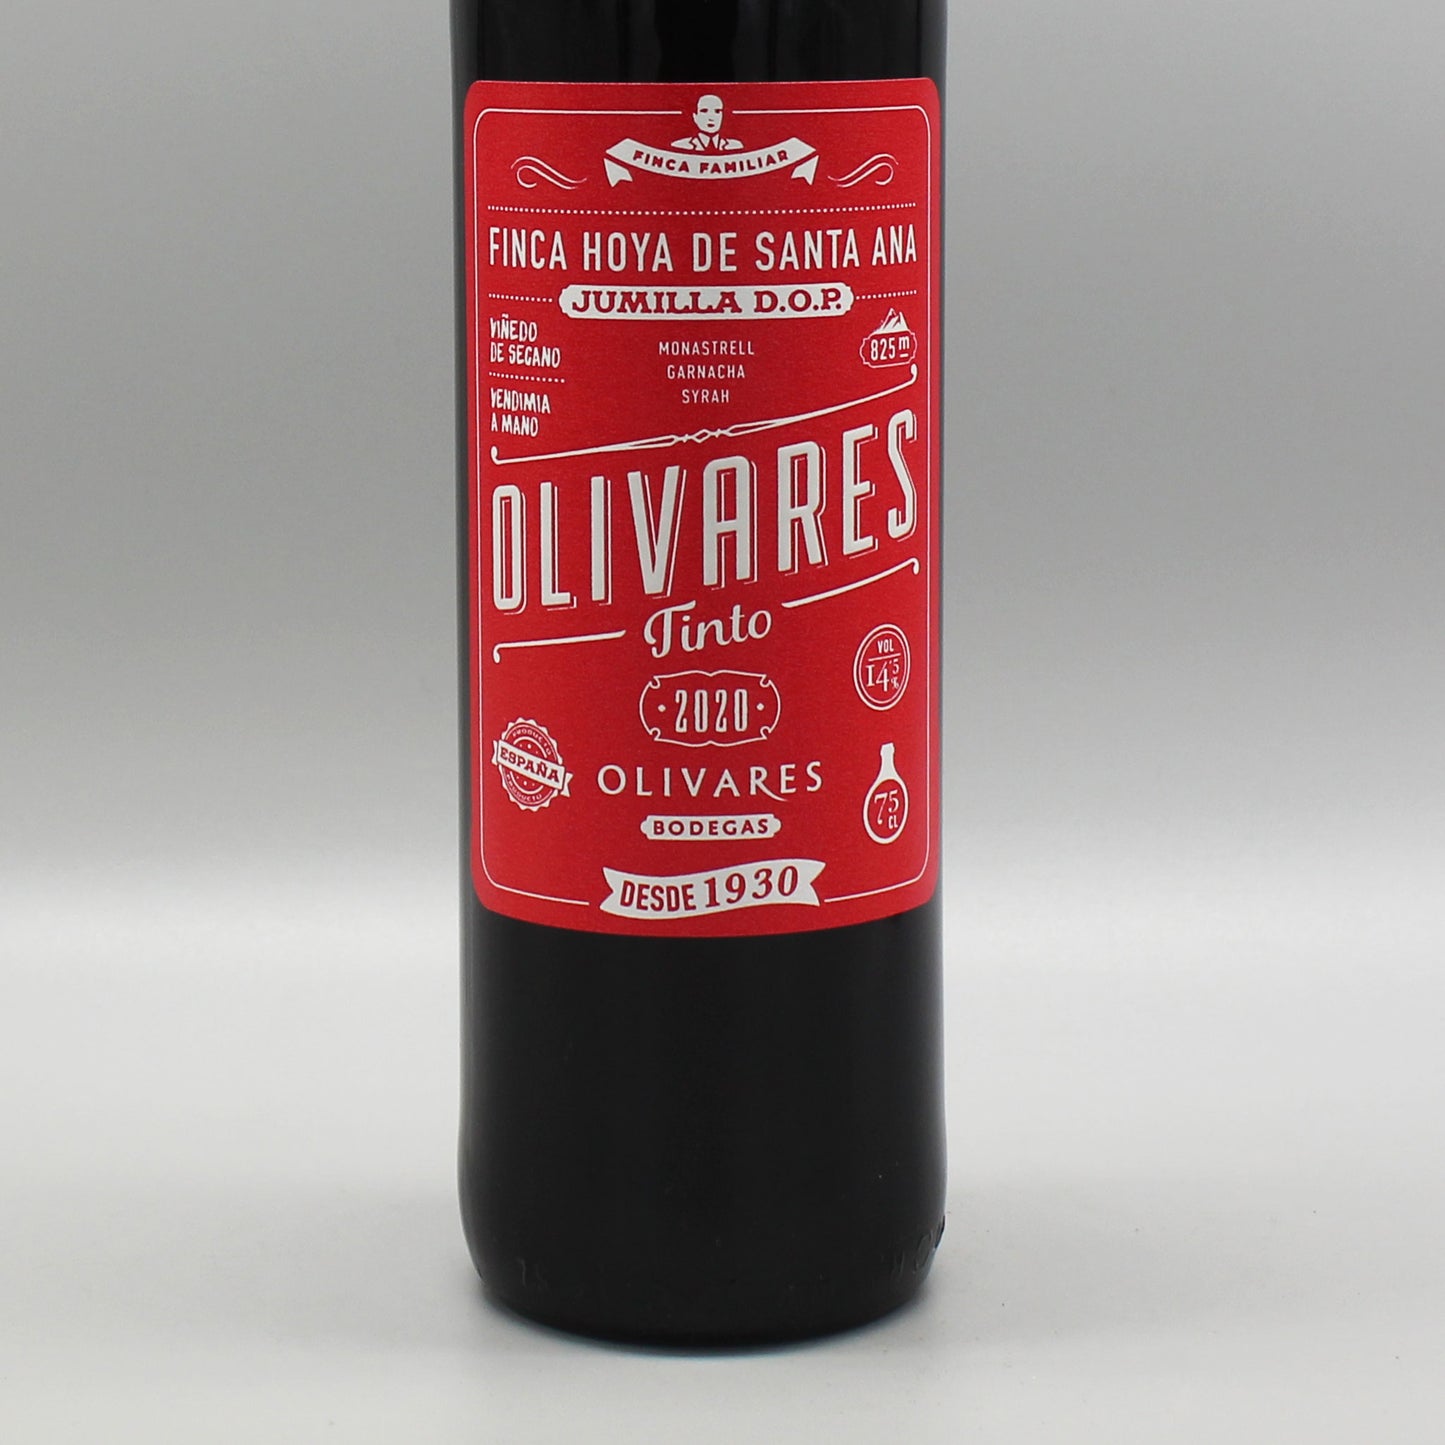 ［スペインワイン］ボデガス・オリバーレス オリバーレス ティント 赤 750ml